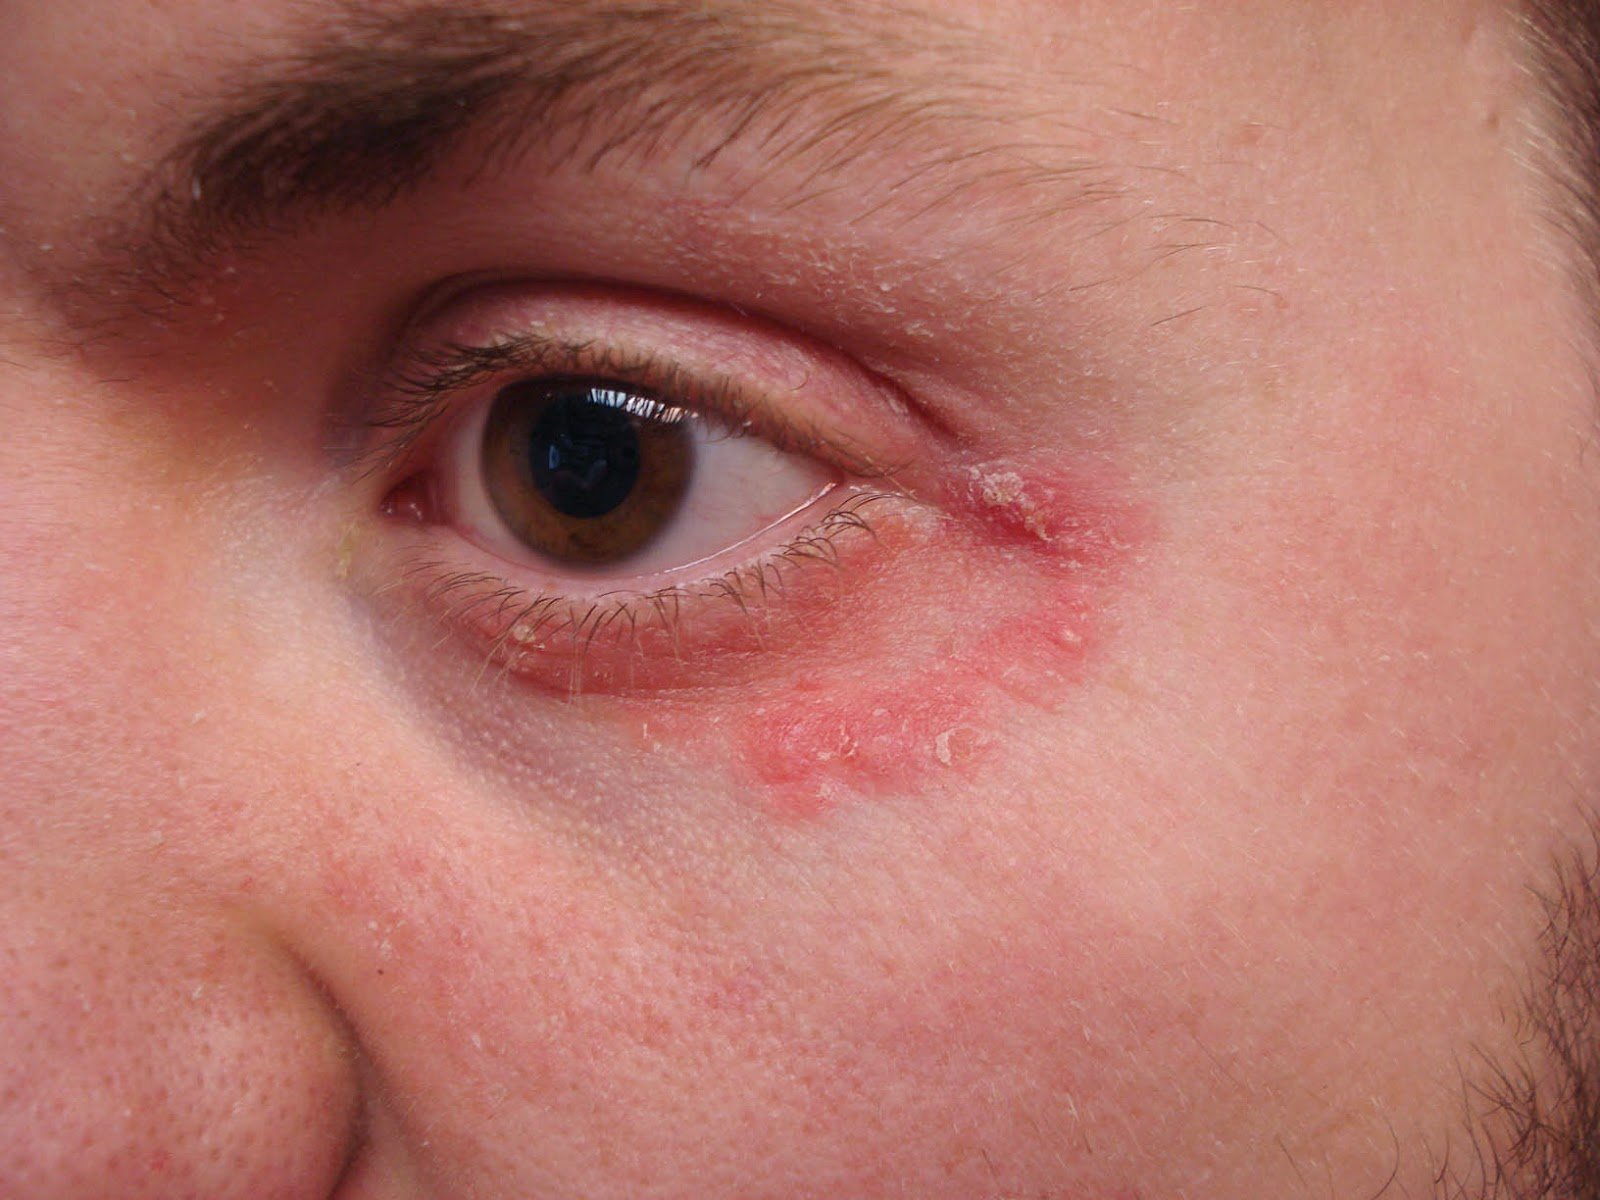 VIRTUAL GRAND ROUNDS IN DERMATOLOGY 2.0: Unusual Eyelid Dermatitis